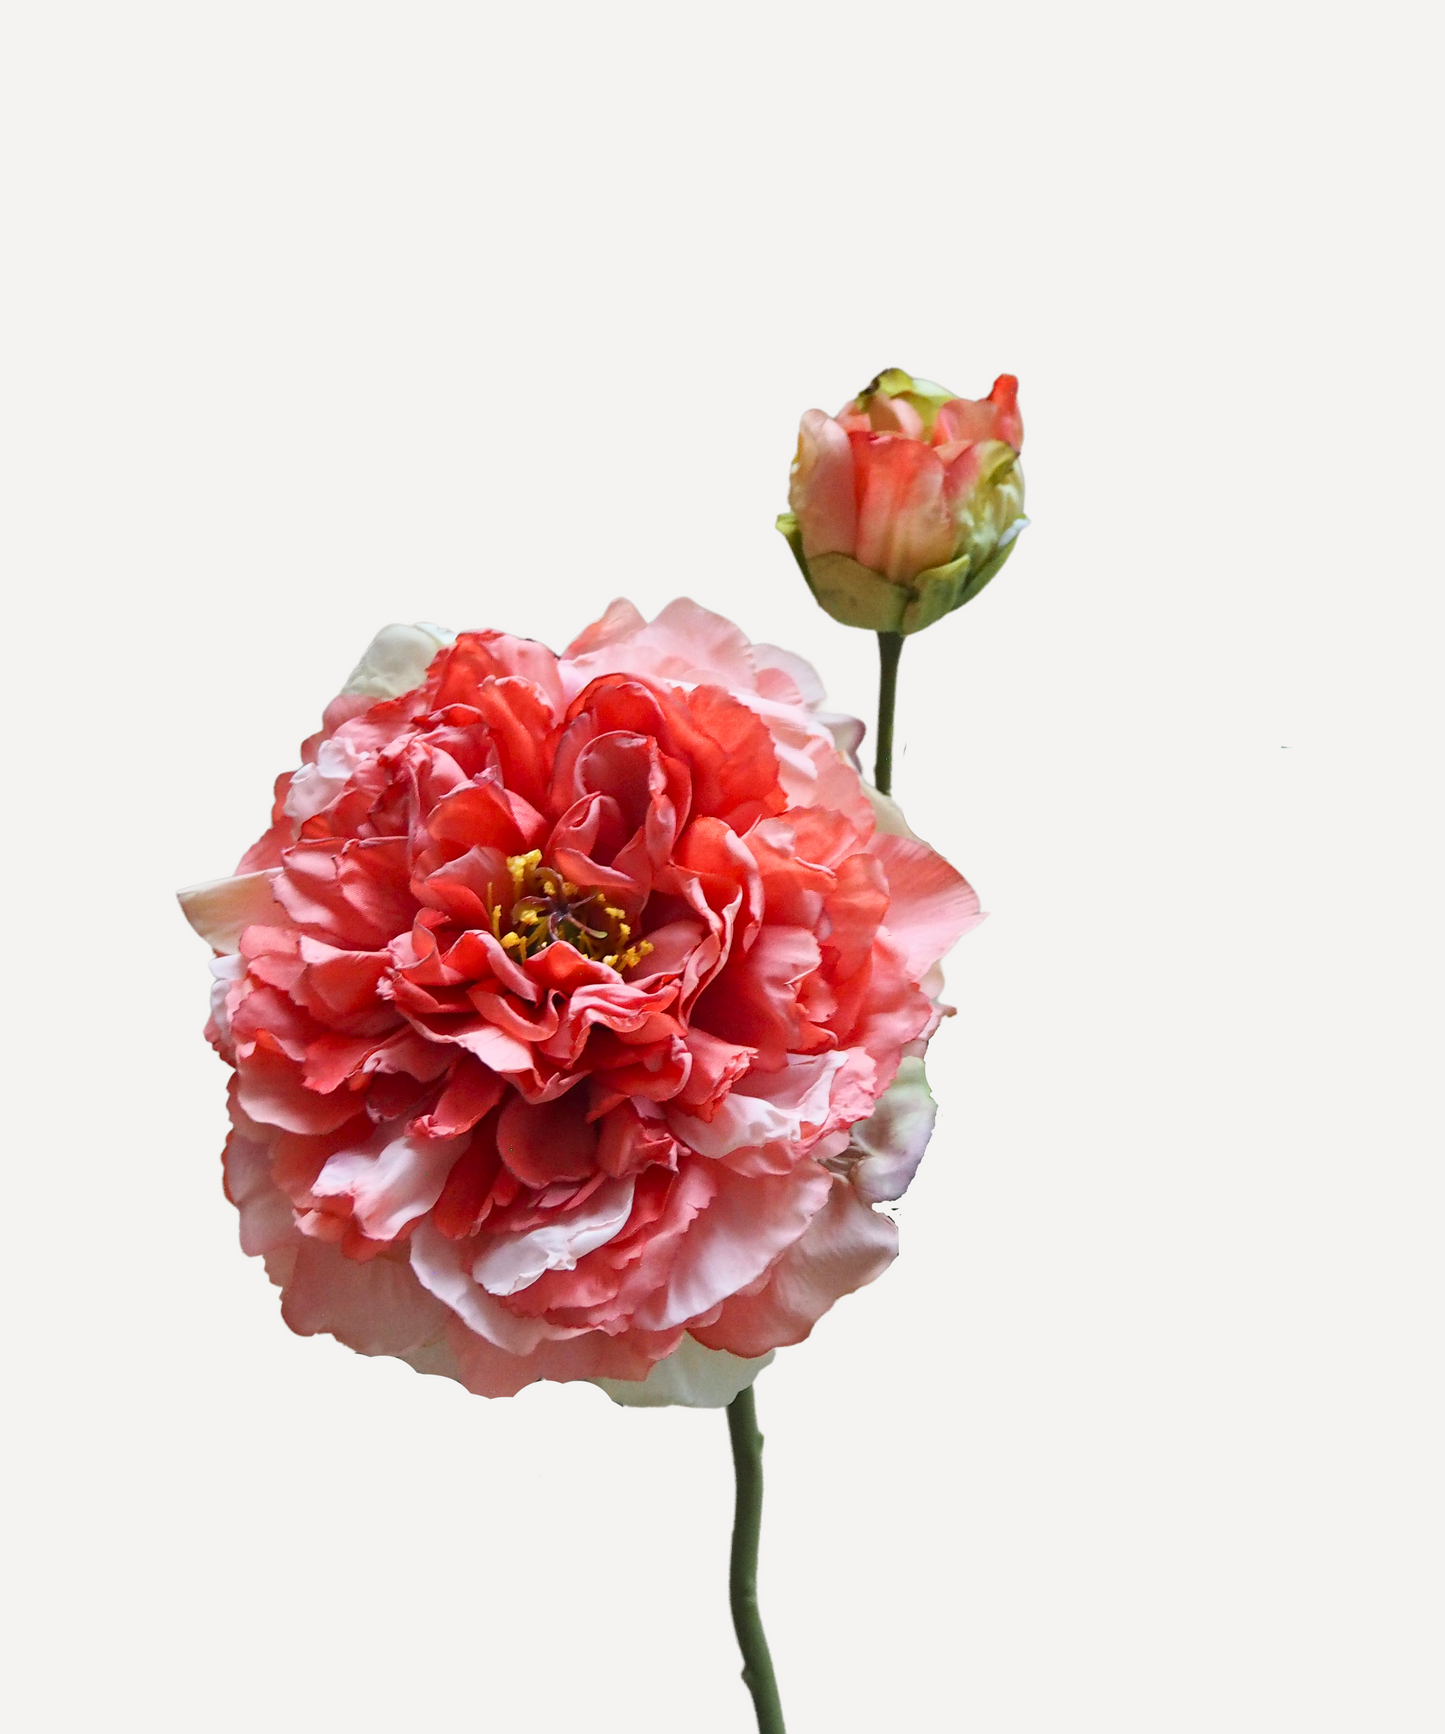 Blooming Peony - Blush Pink, White, Lavender, Coral, Merlot